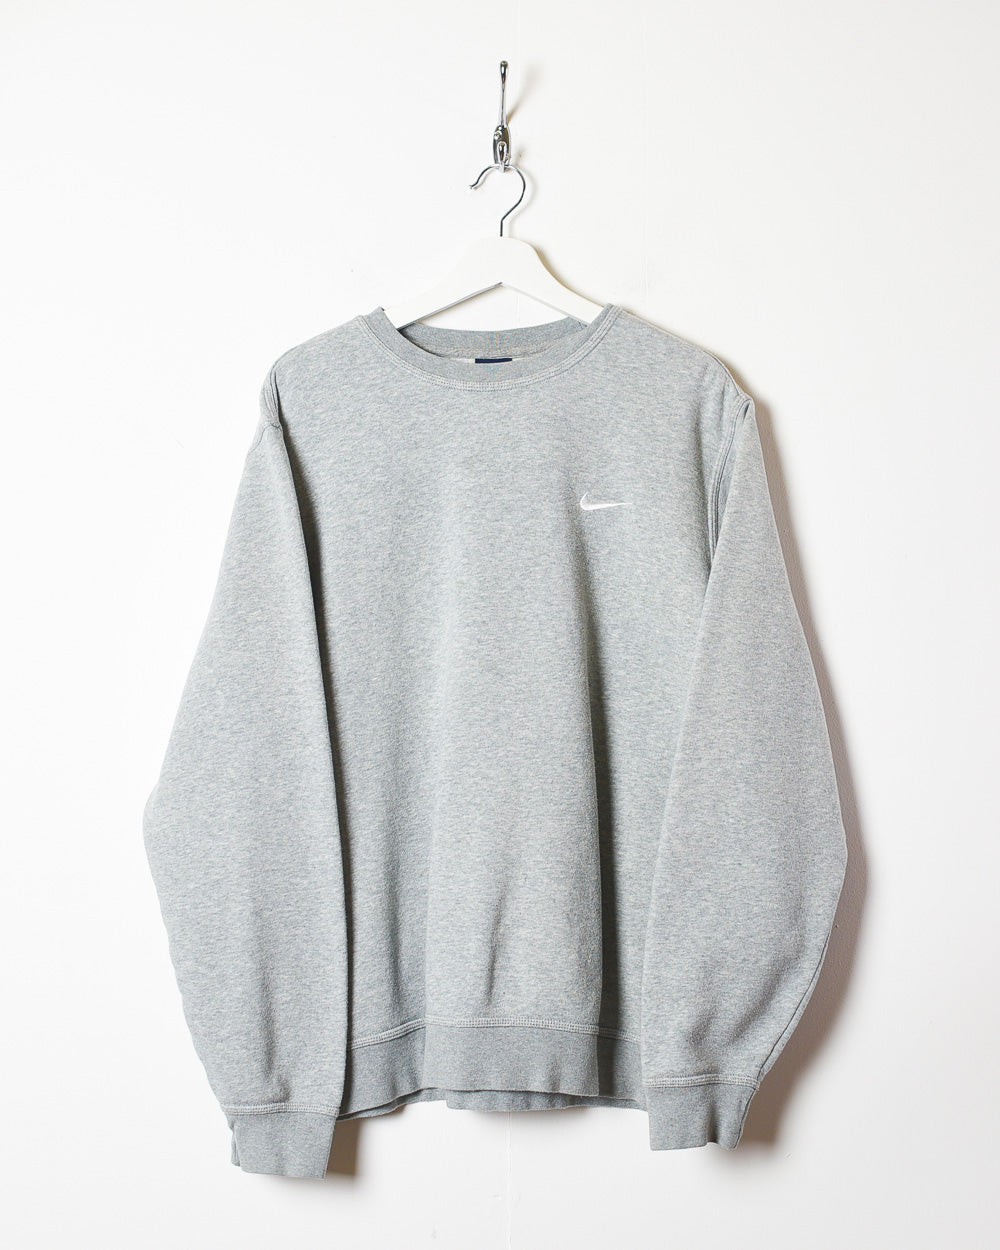 Stone Nike Sweatshirt - X-Large